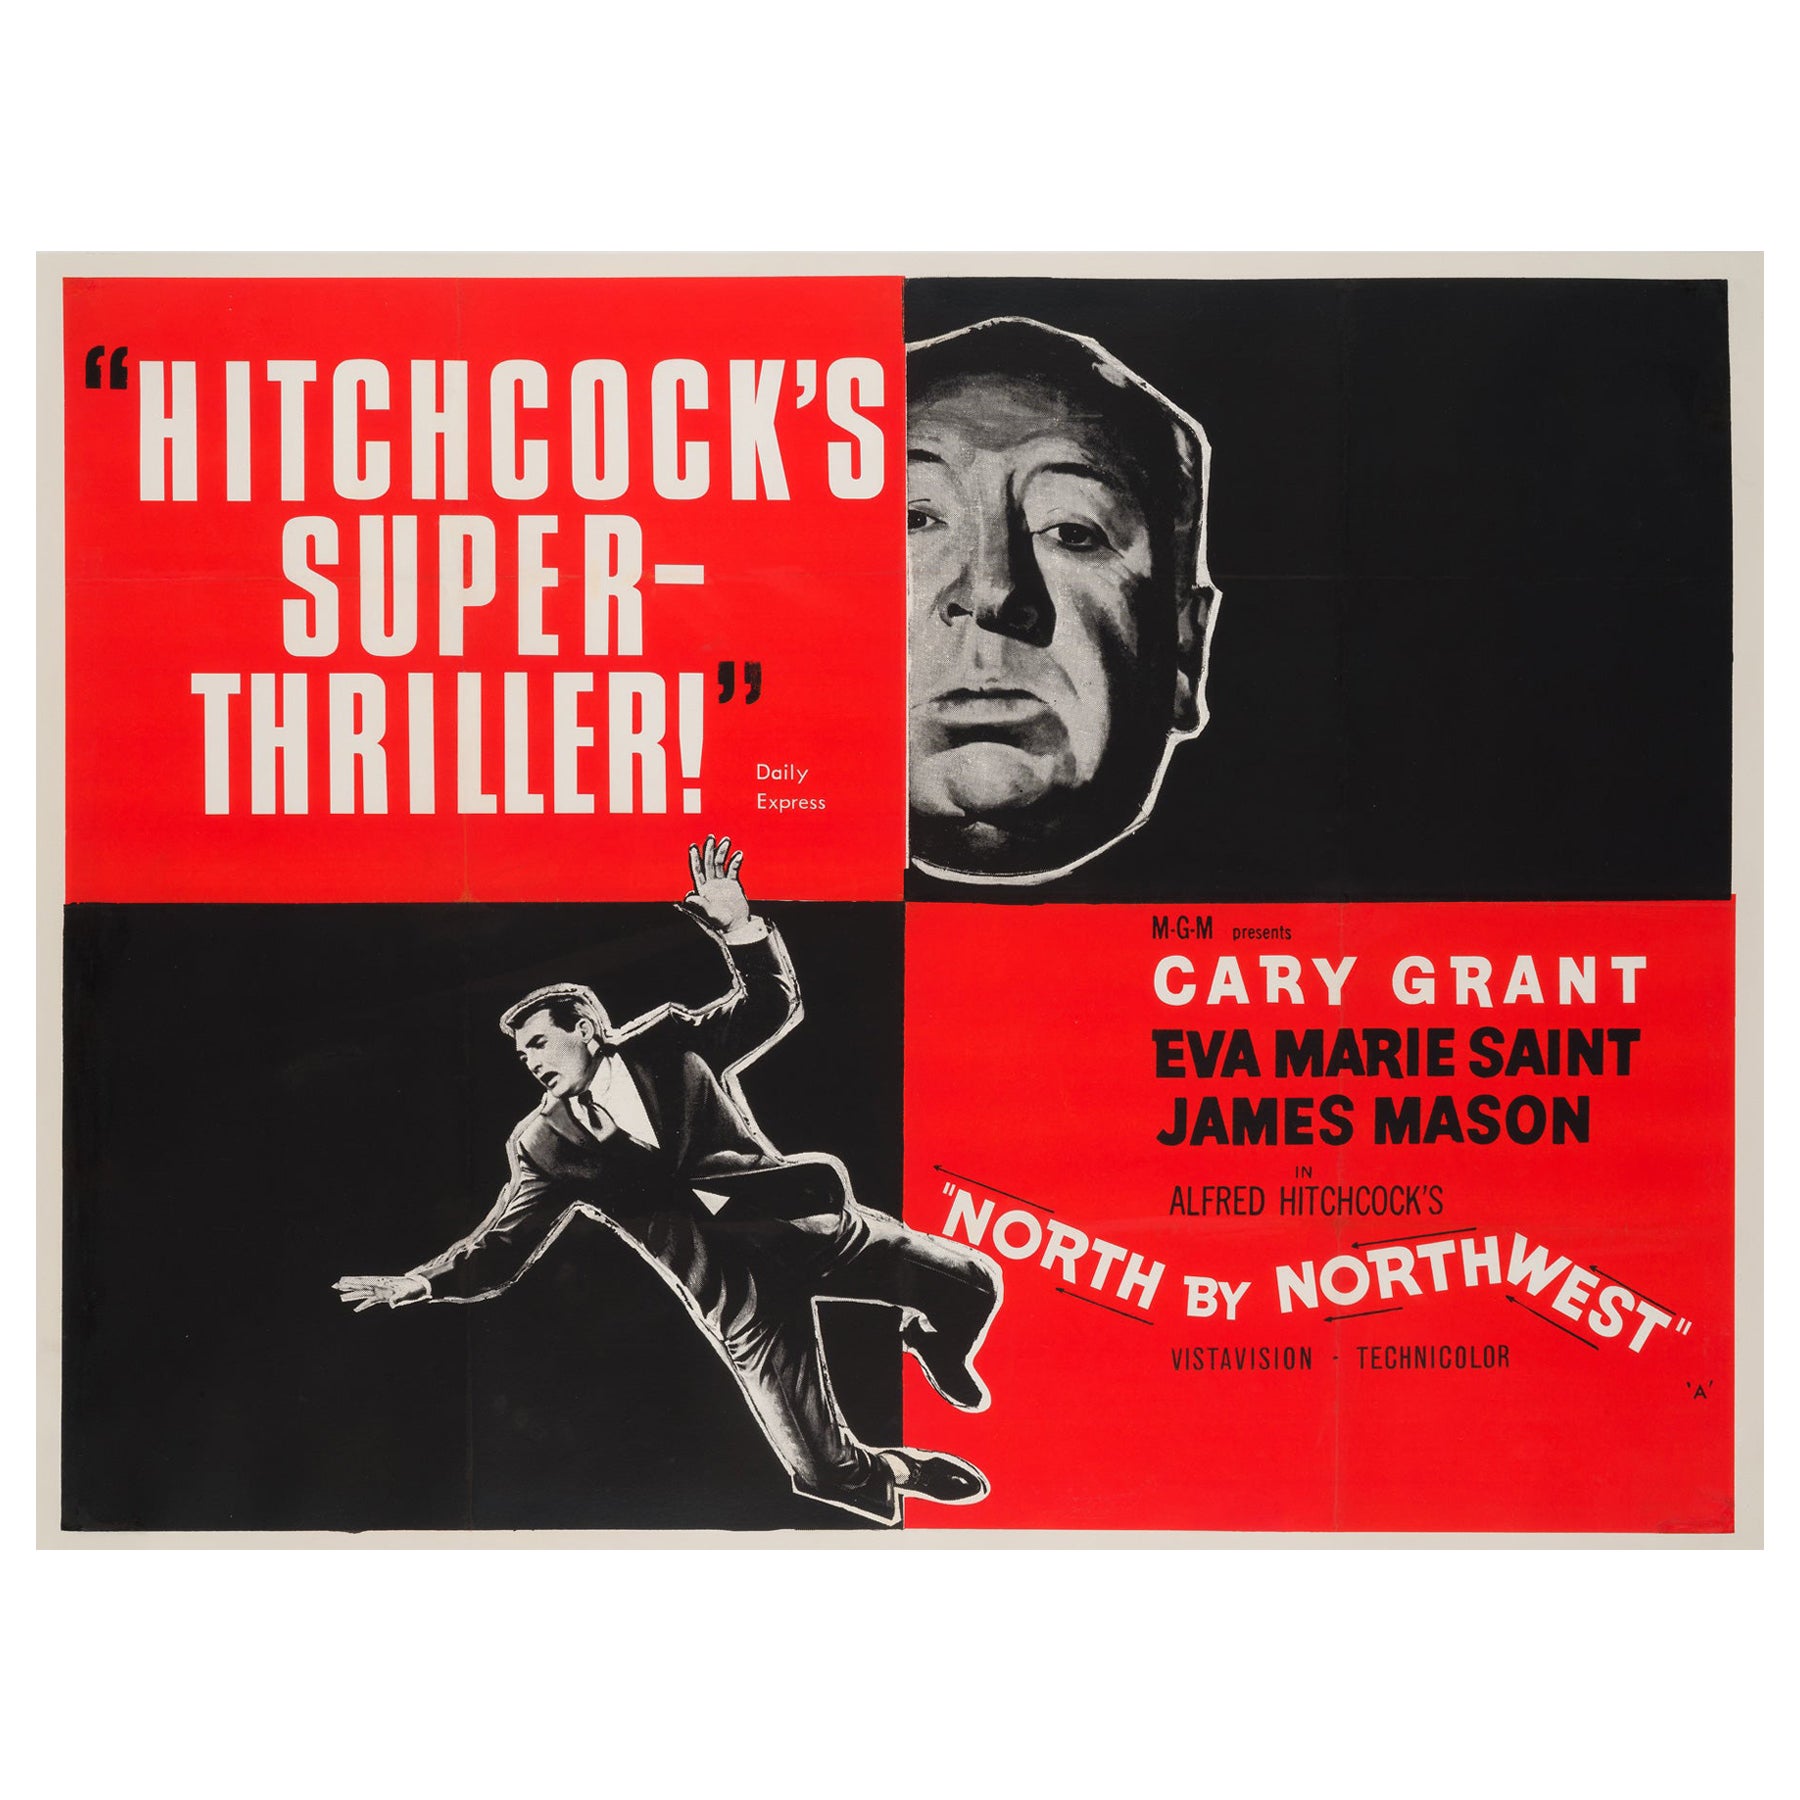 North by Northwest Original British Film Poster, 1950s, Hitchcock